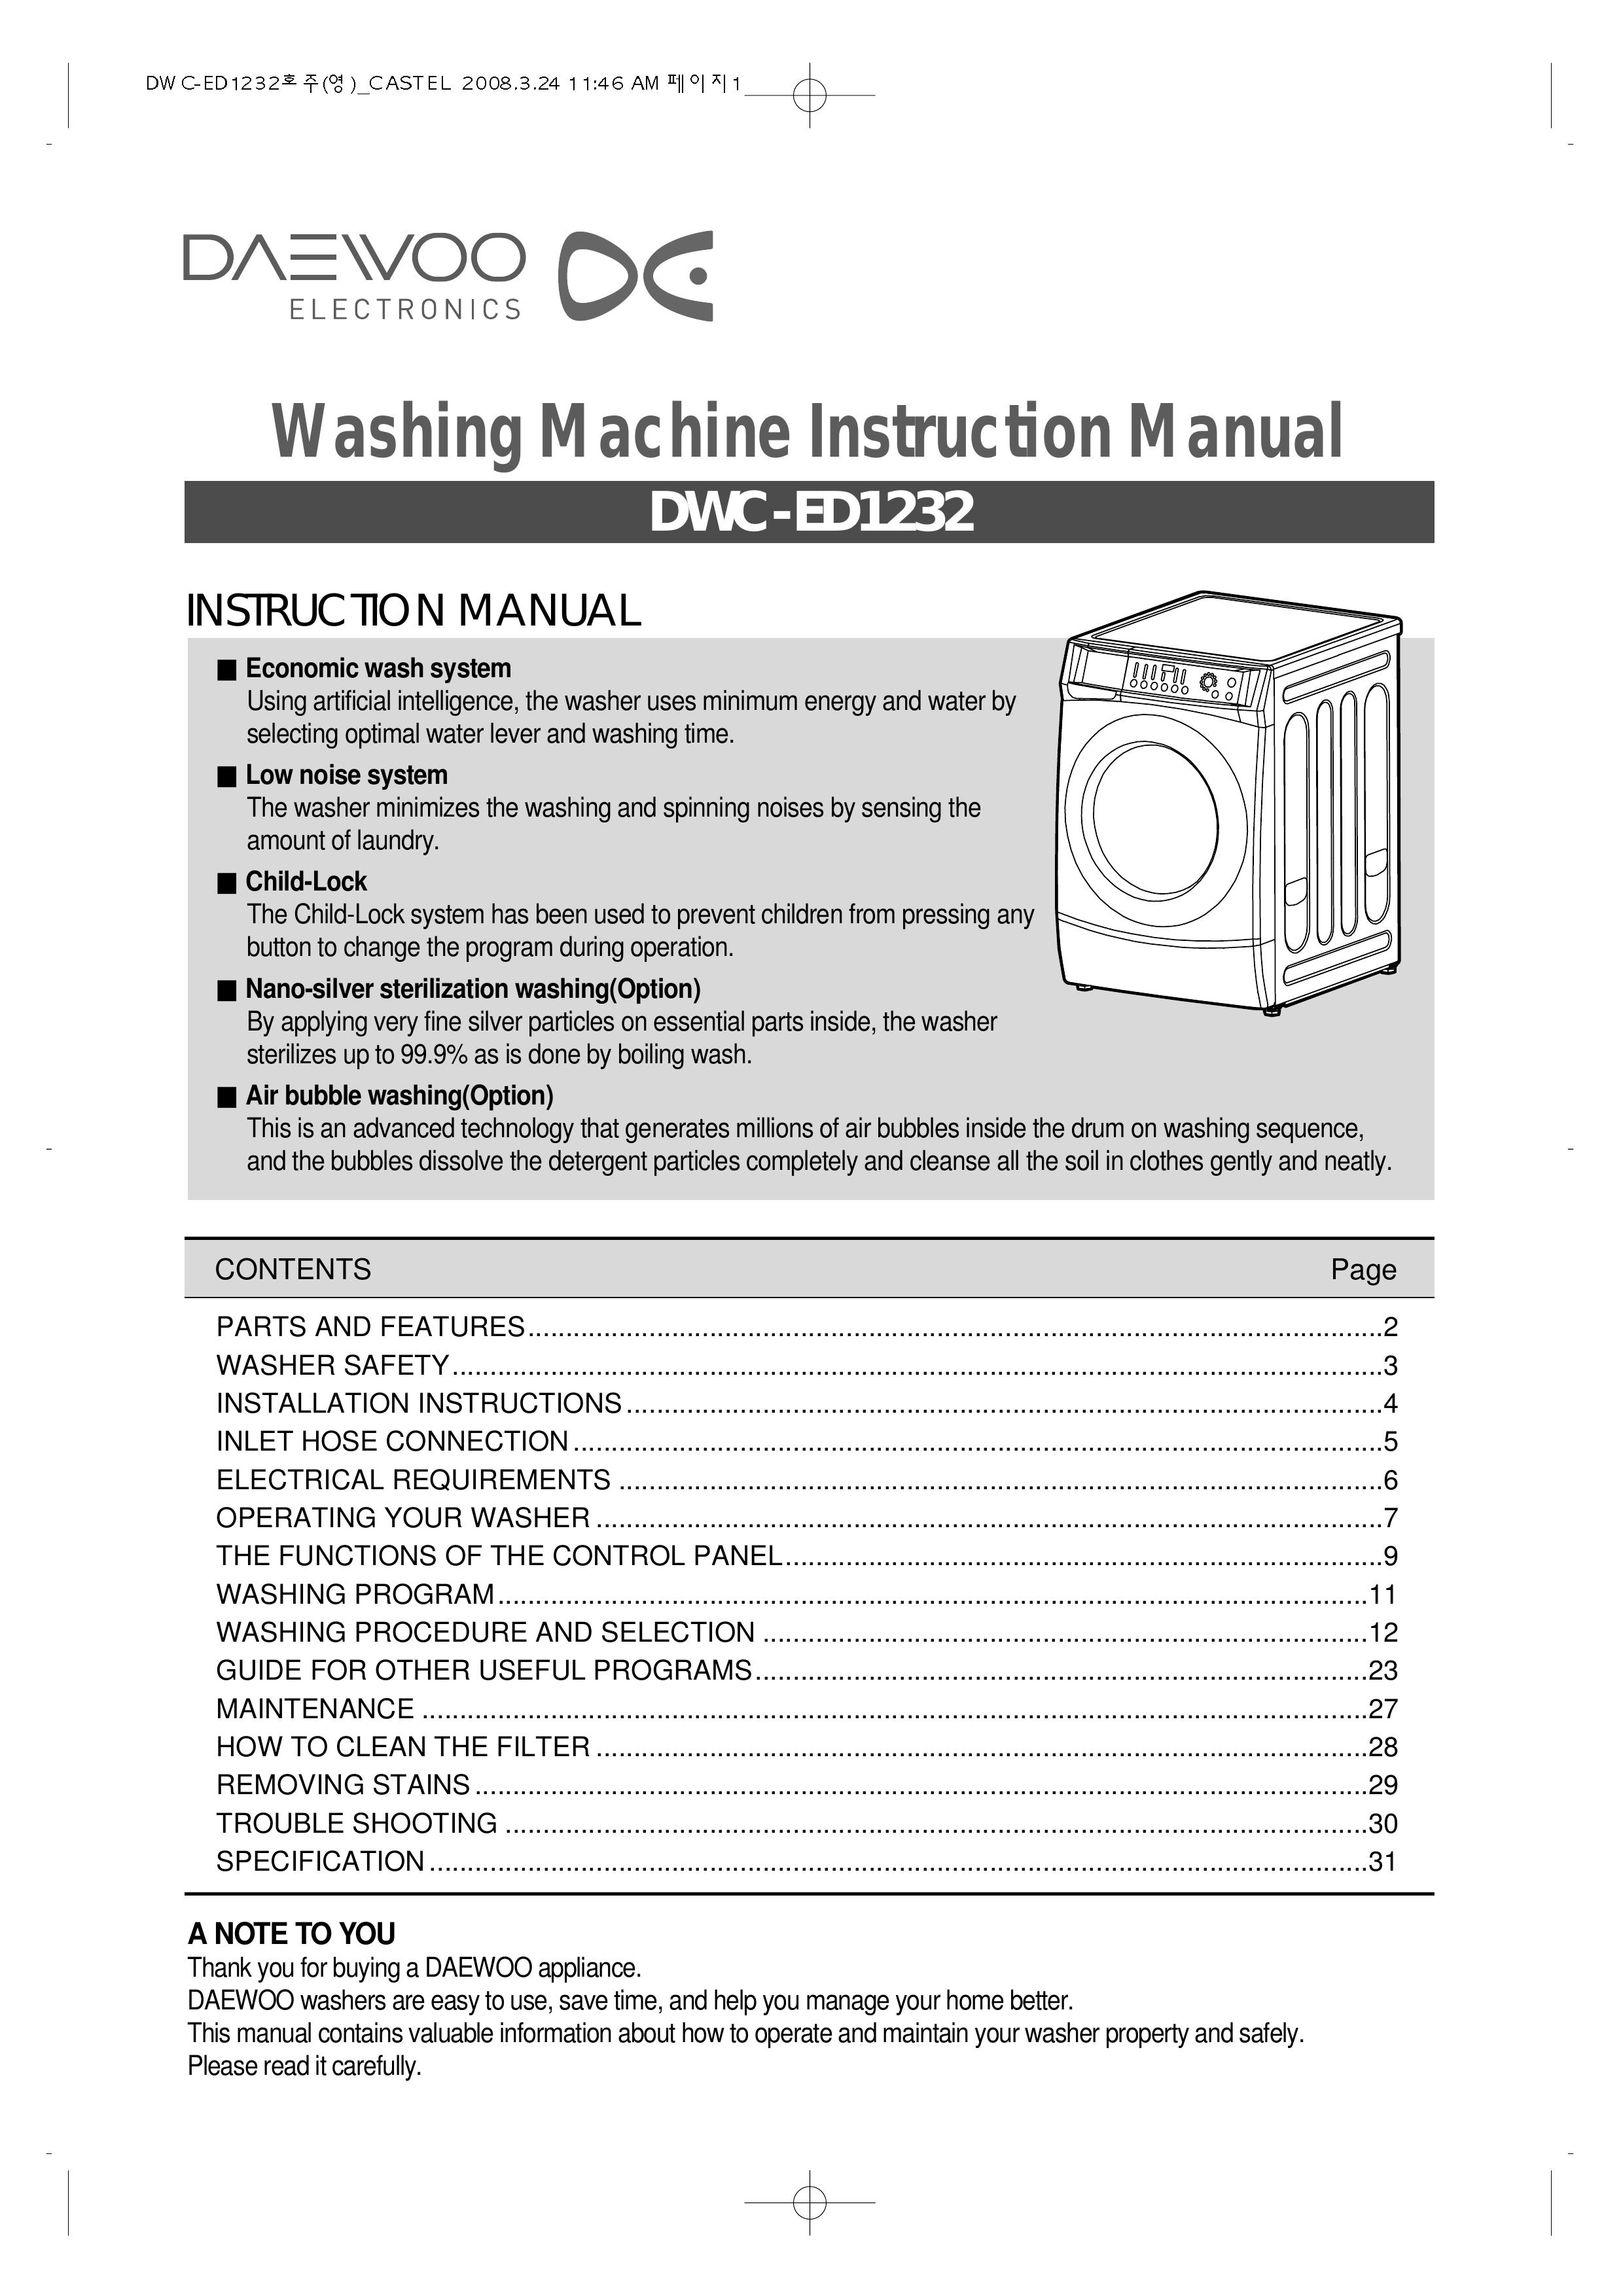 Daewoo DWC-ED1232 Washer User Manual